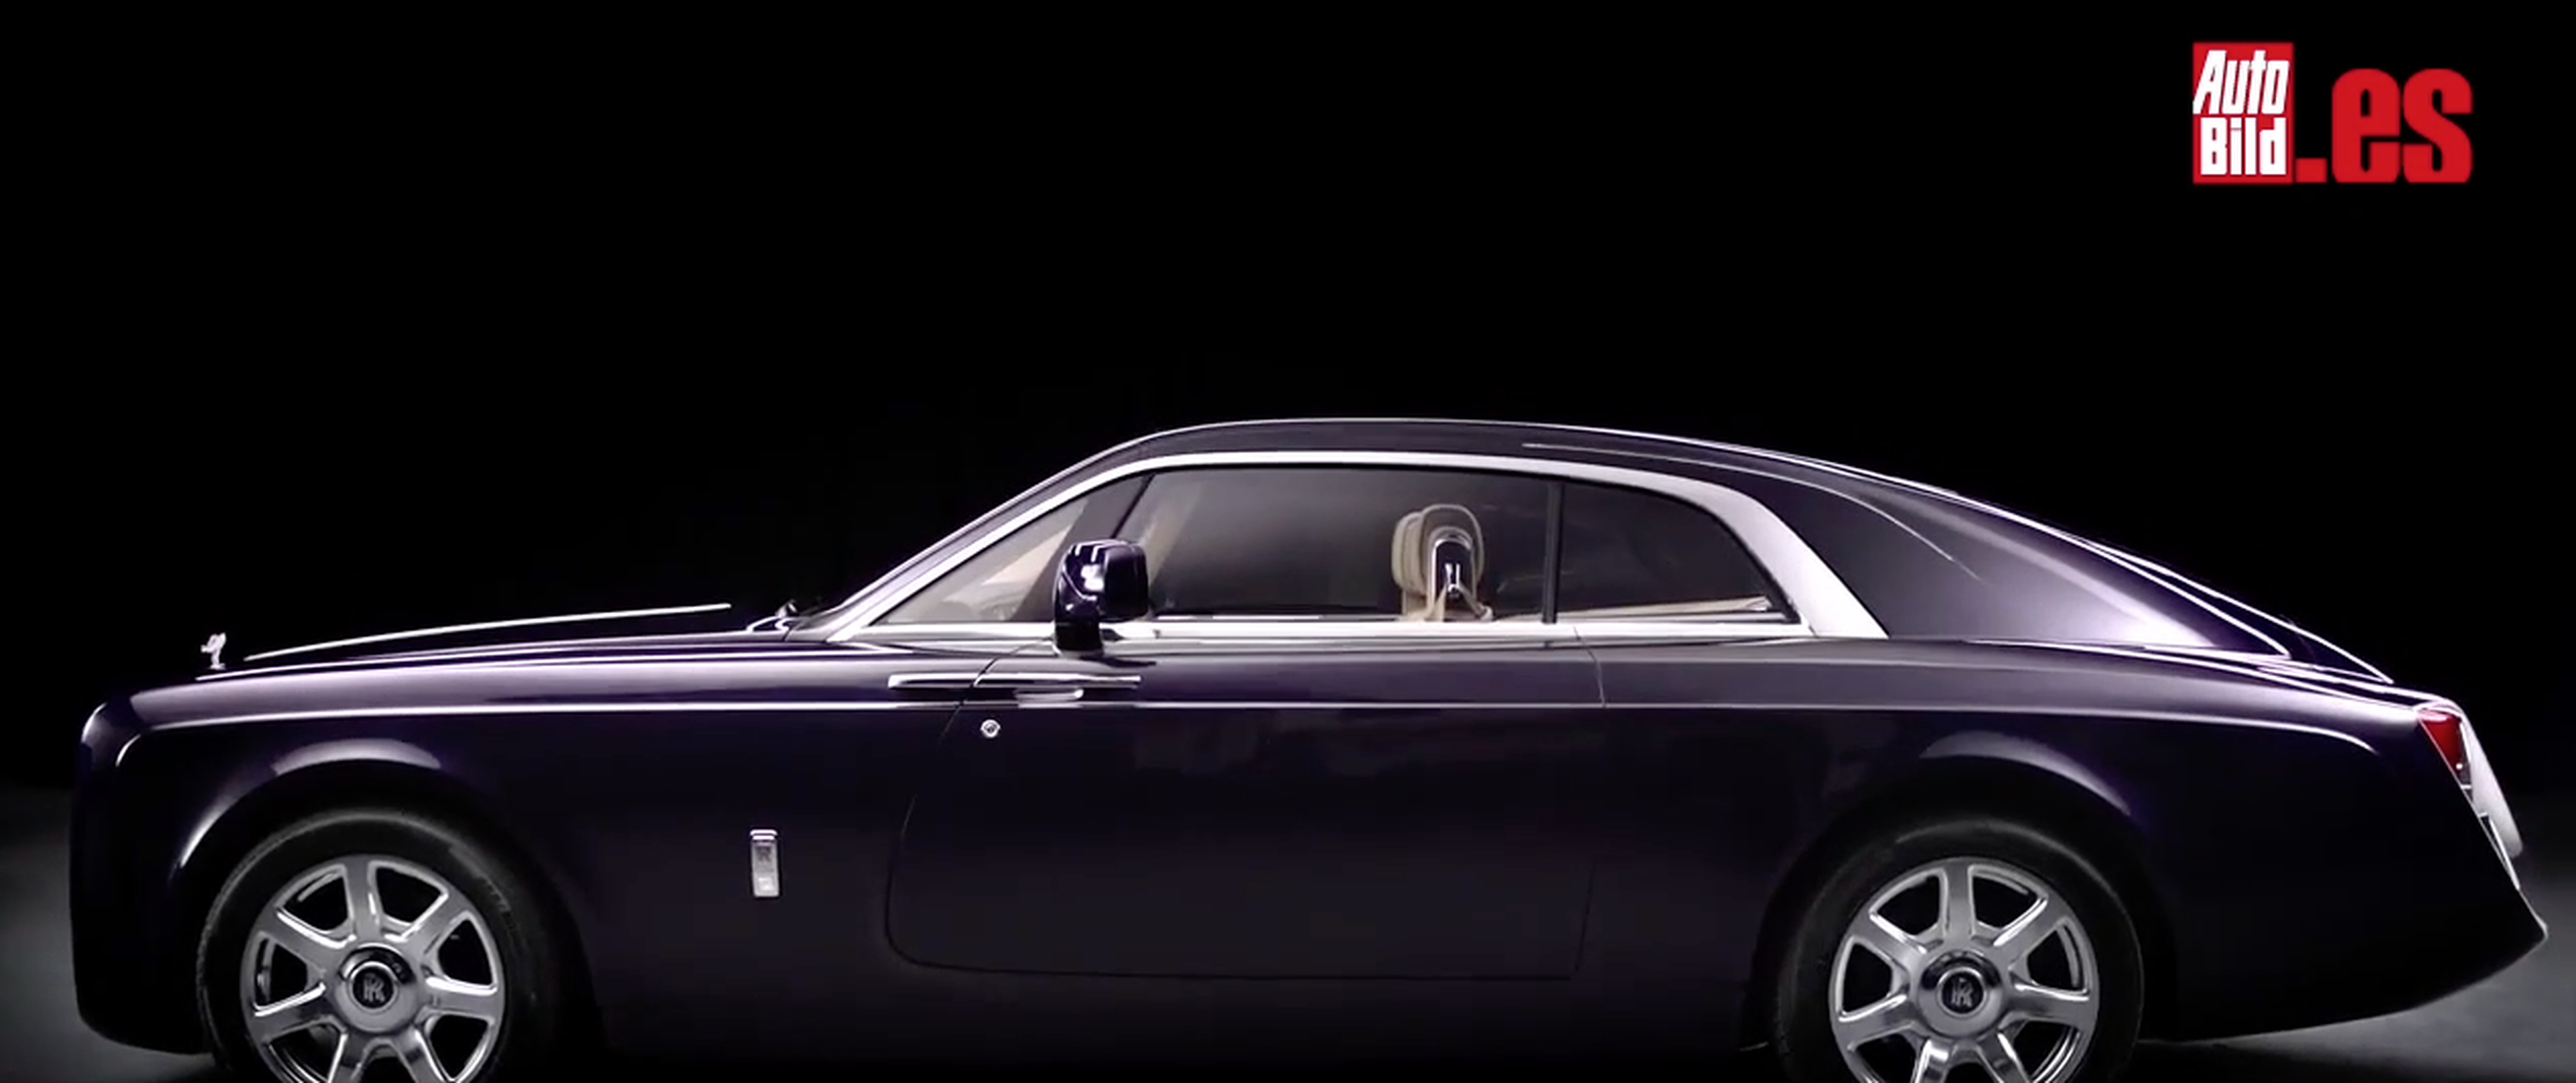 VÍDEO: ¡Ponte a ahorrar! Este es el Rolls-Royce más exclusivo